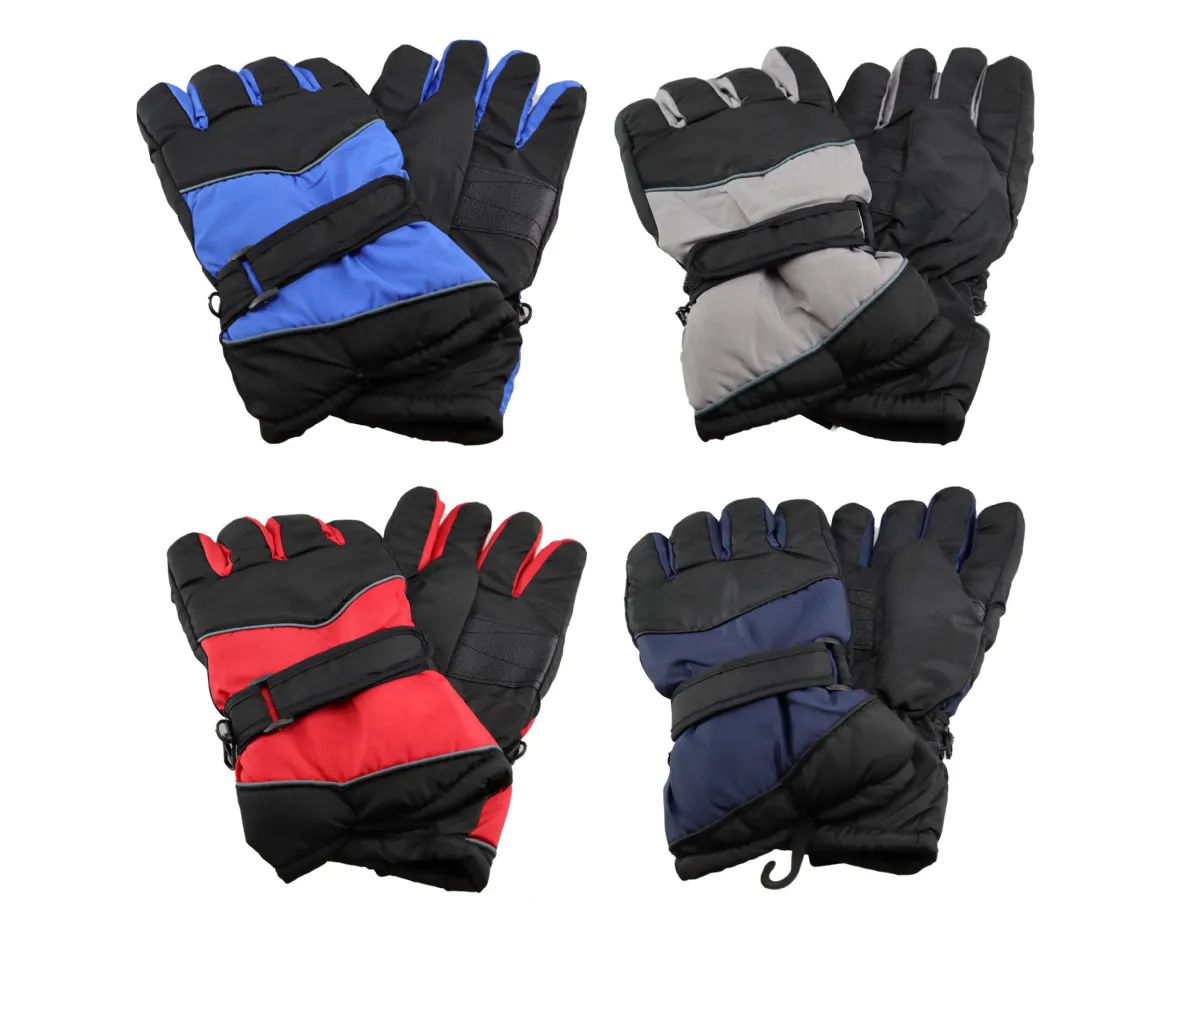 36 Pieces of Men Water Resistant Ski Glove